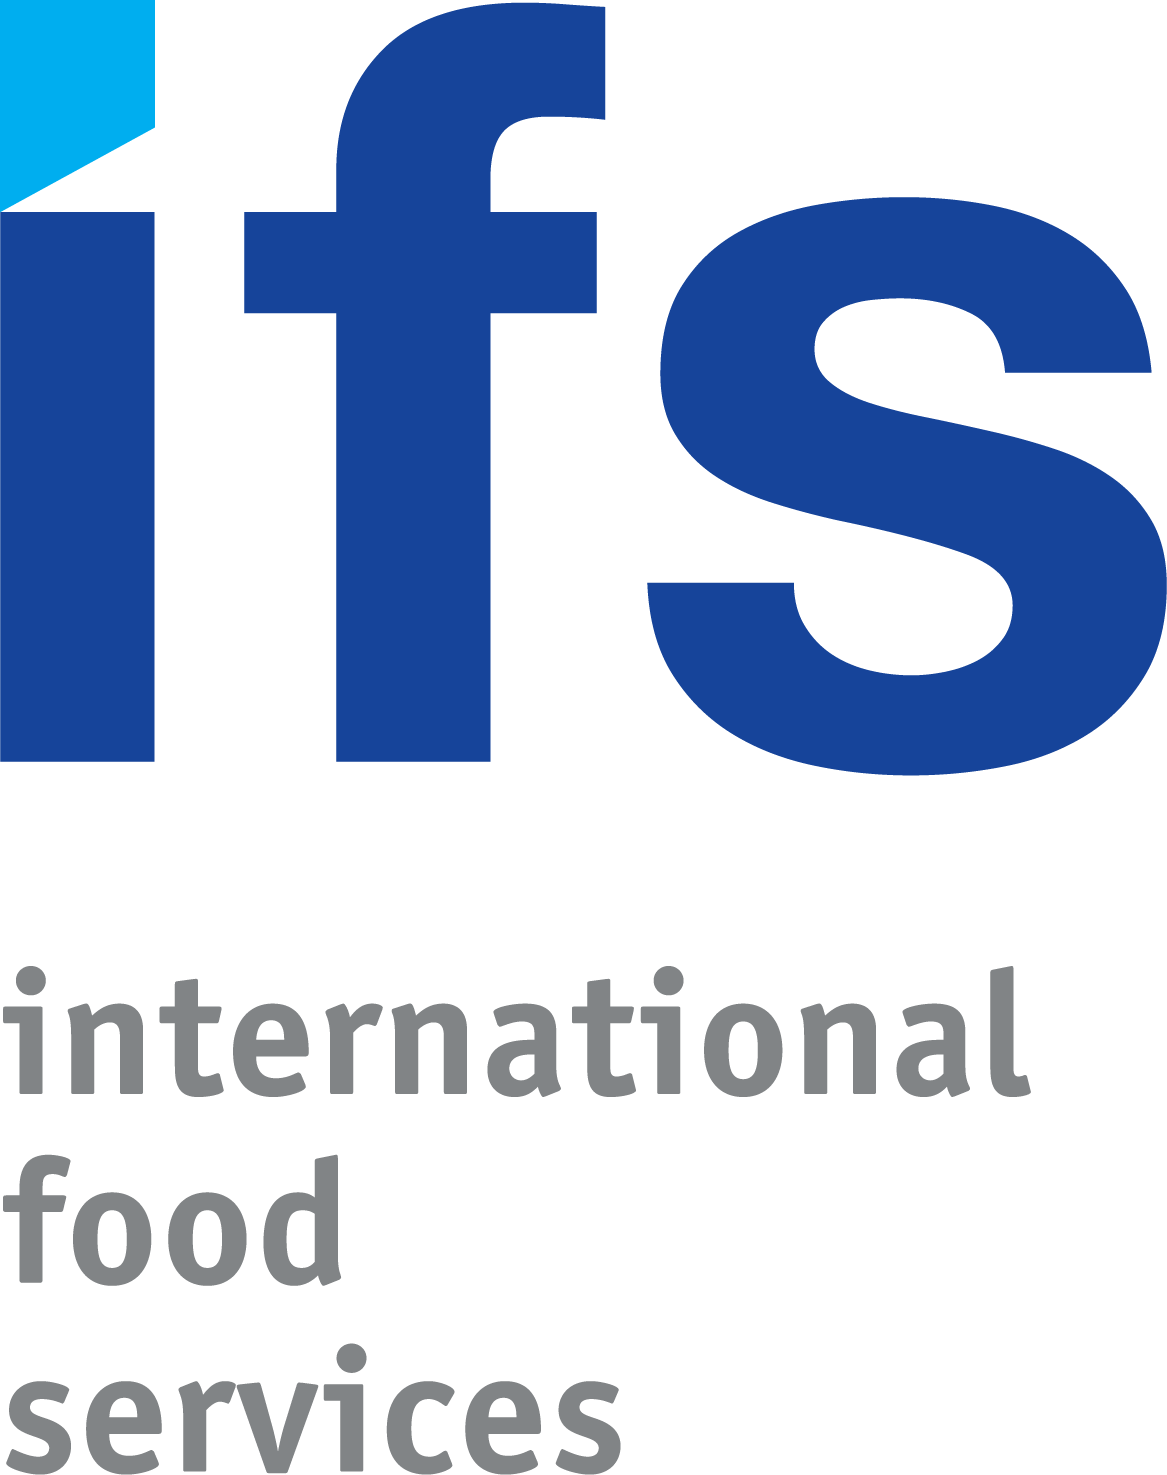 IFS Logo - File:IFS-Logo (original).png - Wikimedia Commons